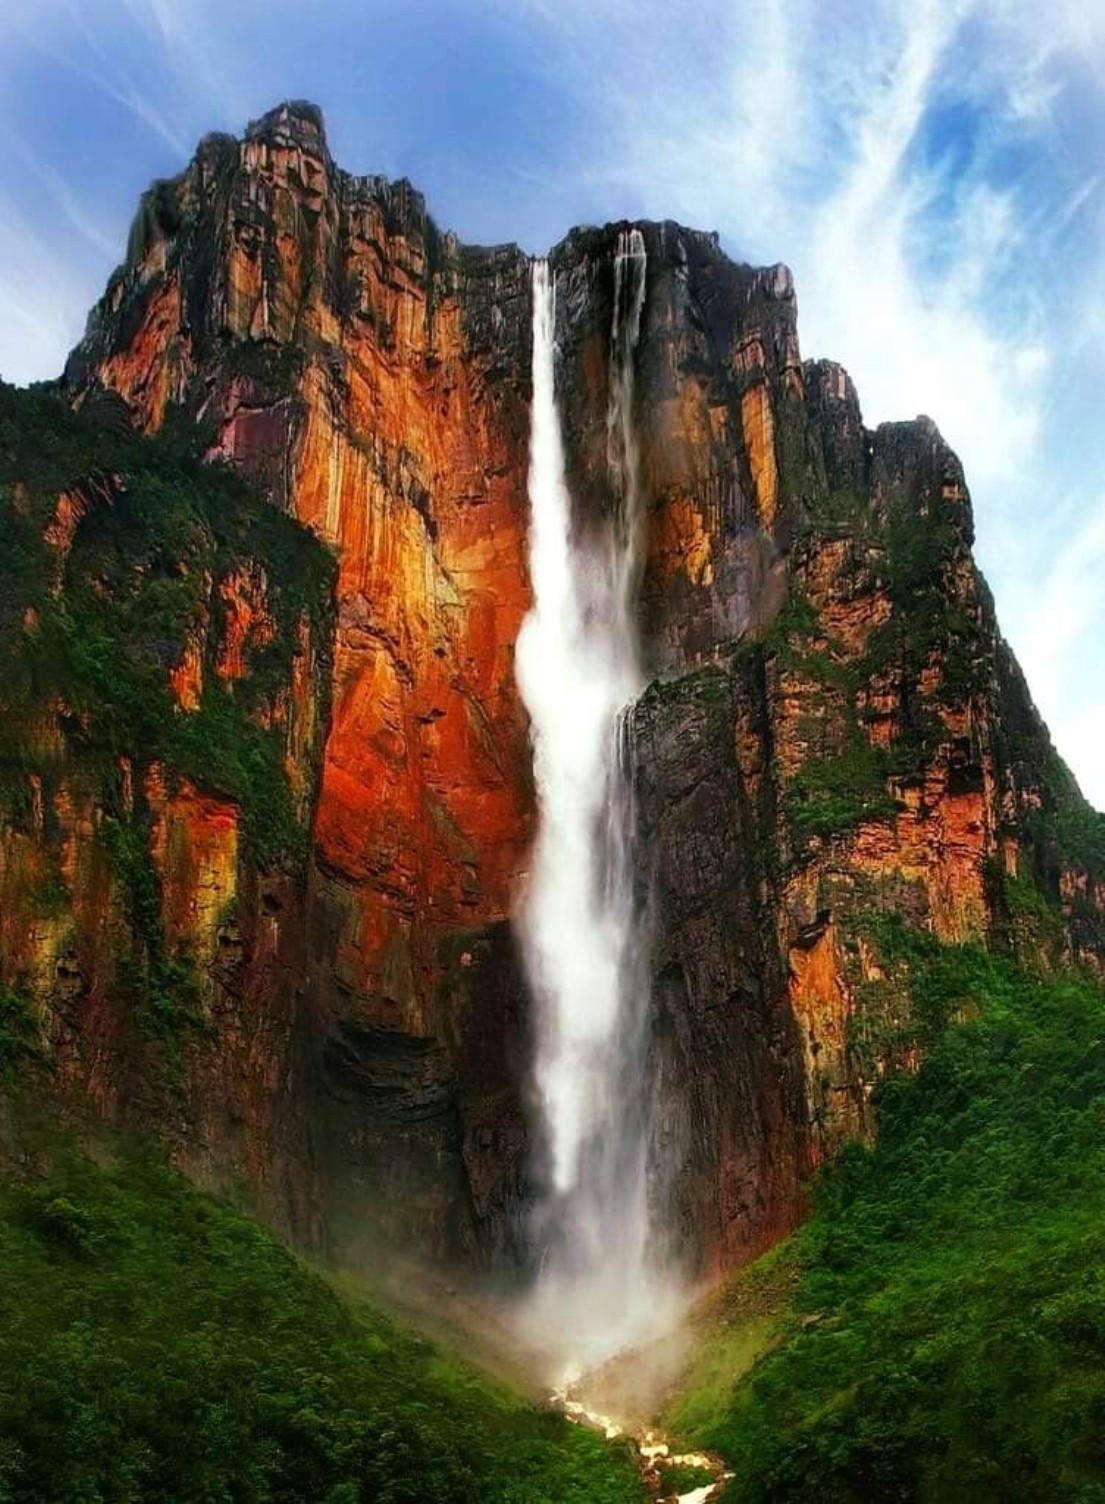 Анхель, самый высокий водопад в мире, общая высота 979 метров, высота непрерывного свободного падения воды 807 метров. Находится на реке Кереп в венесуэльском штате Боливар..jpg   